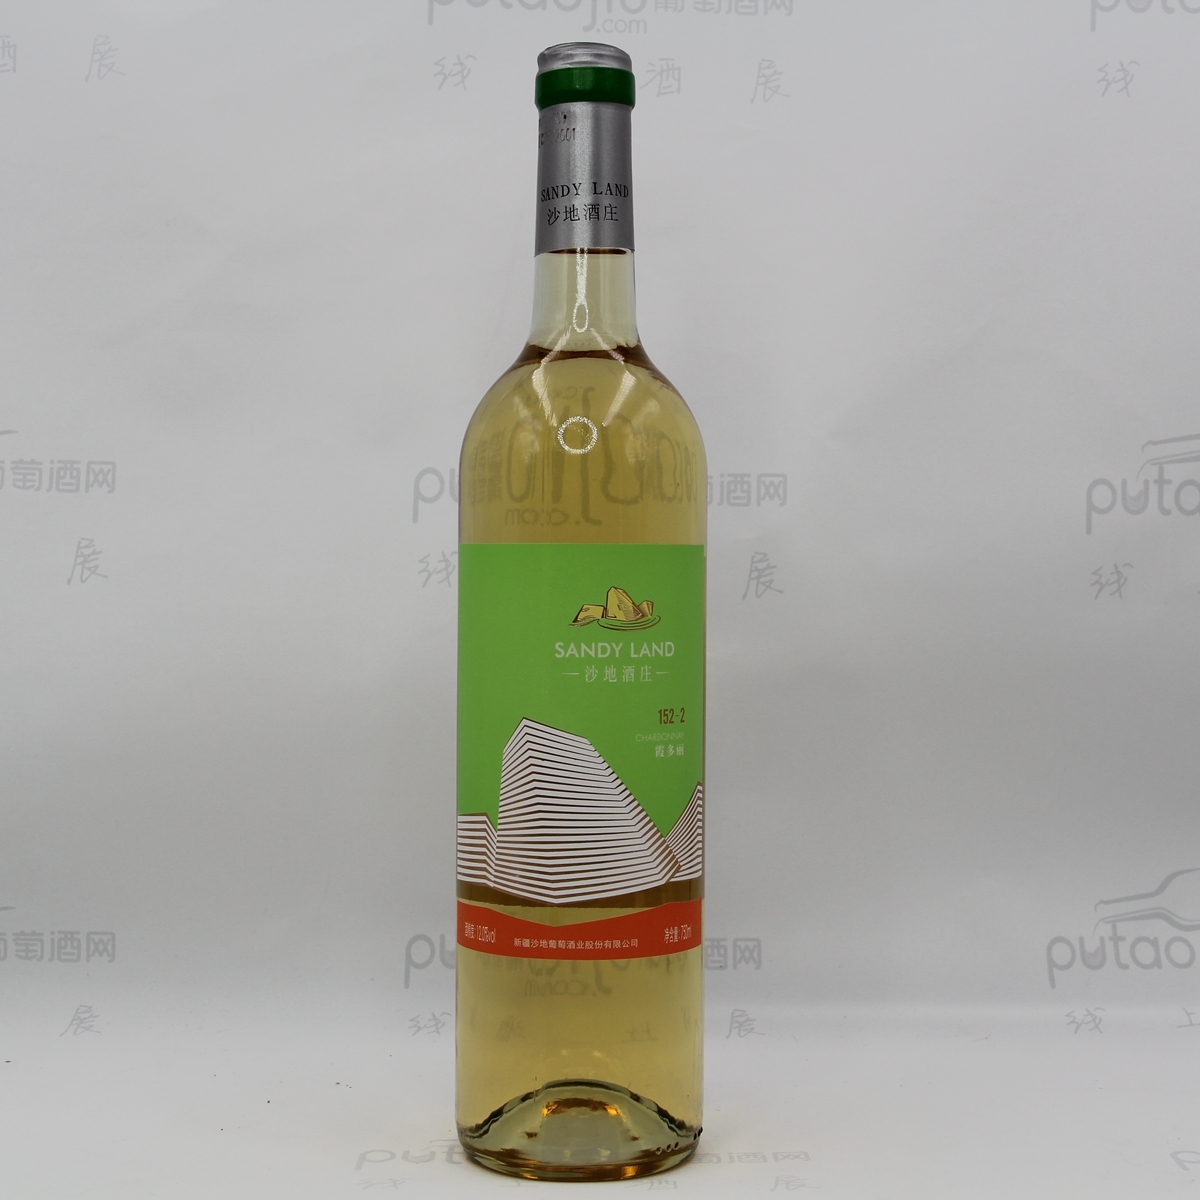 中国新疆产区沙地酒庄 霞多丽152-2干白葡萄酒